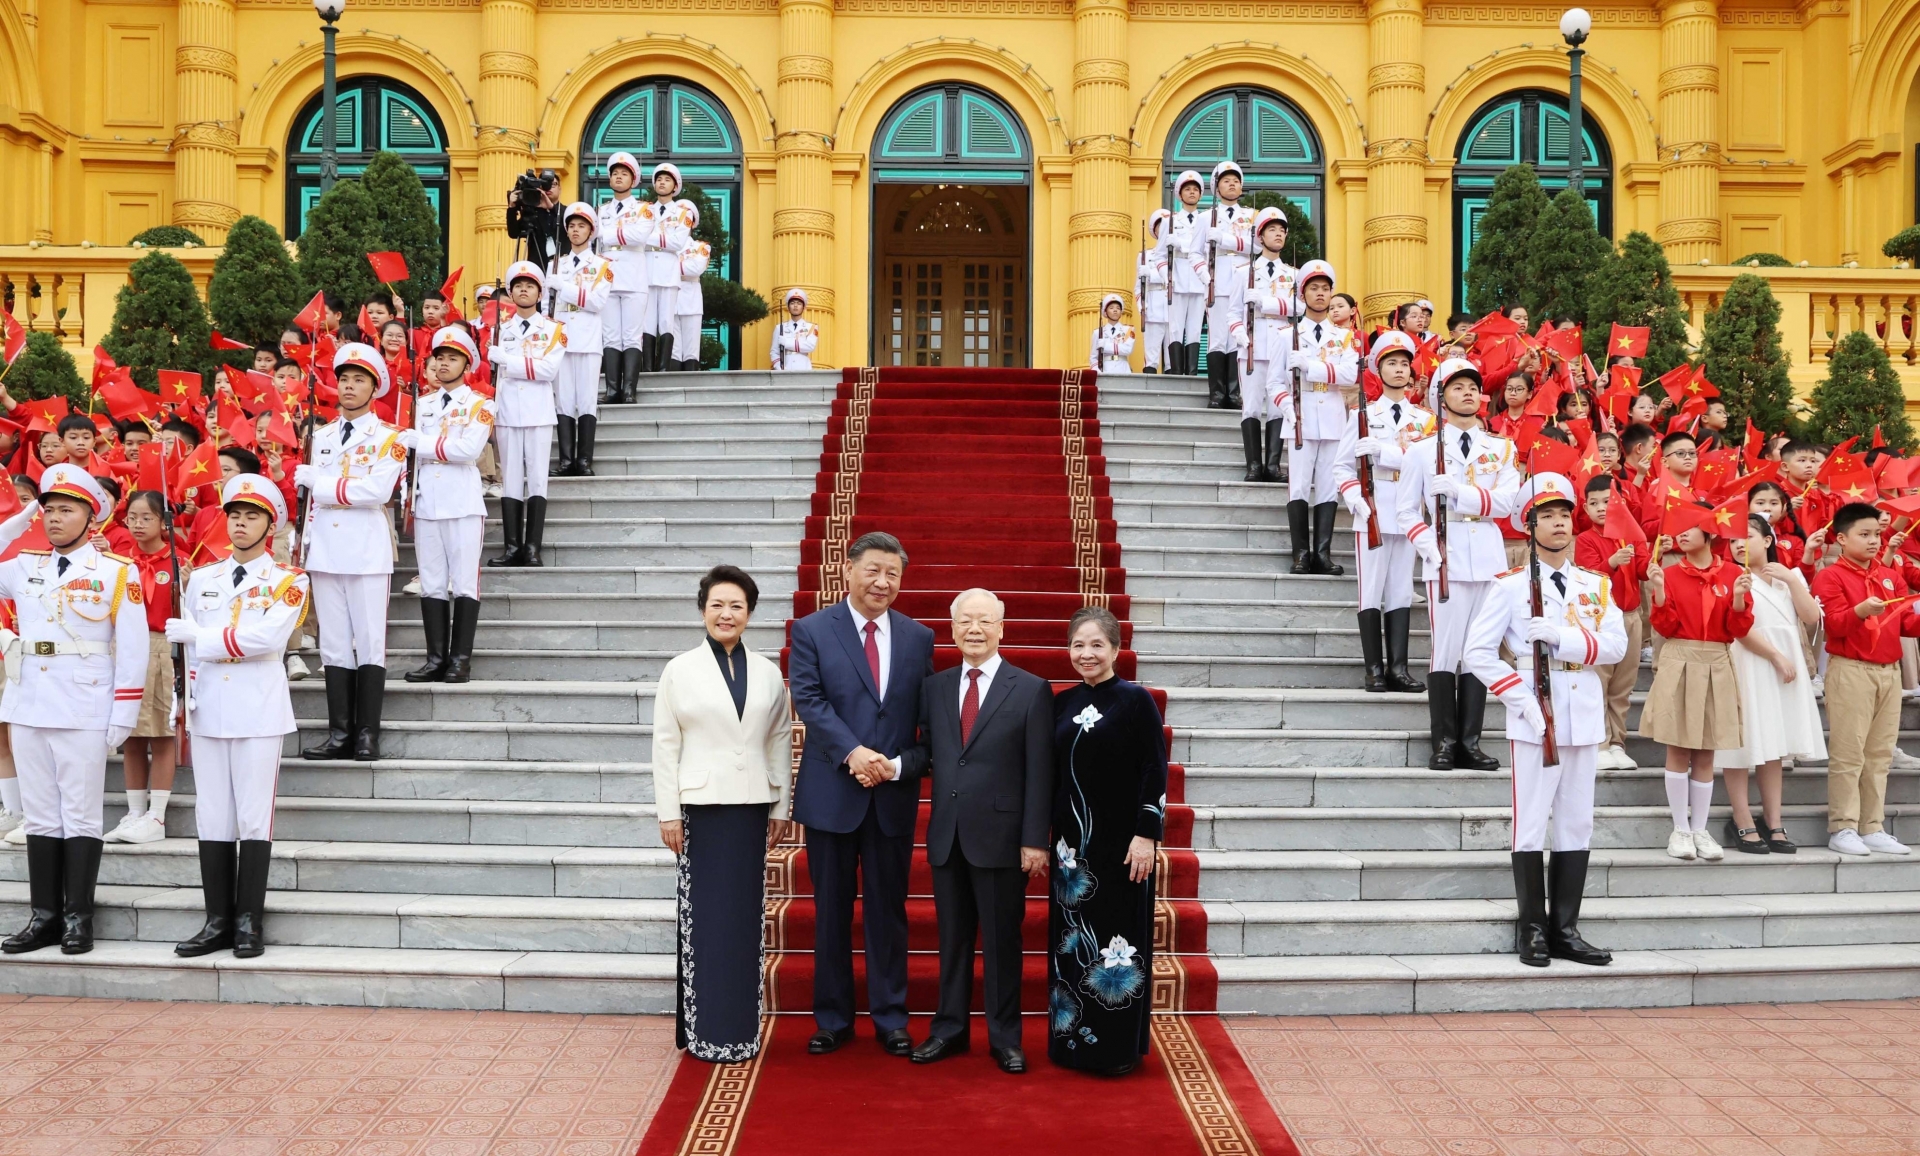 越共中央总书记阮富仲主持仪式 欢迎中共中央总书记、中国国家主席习近平到访。